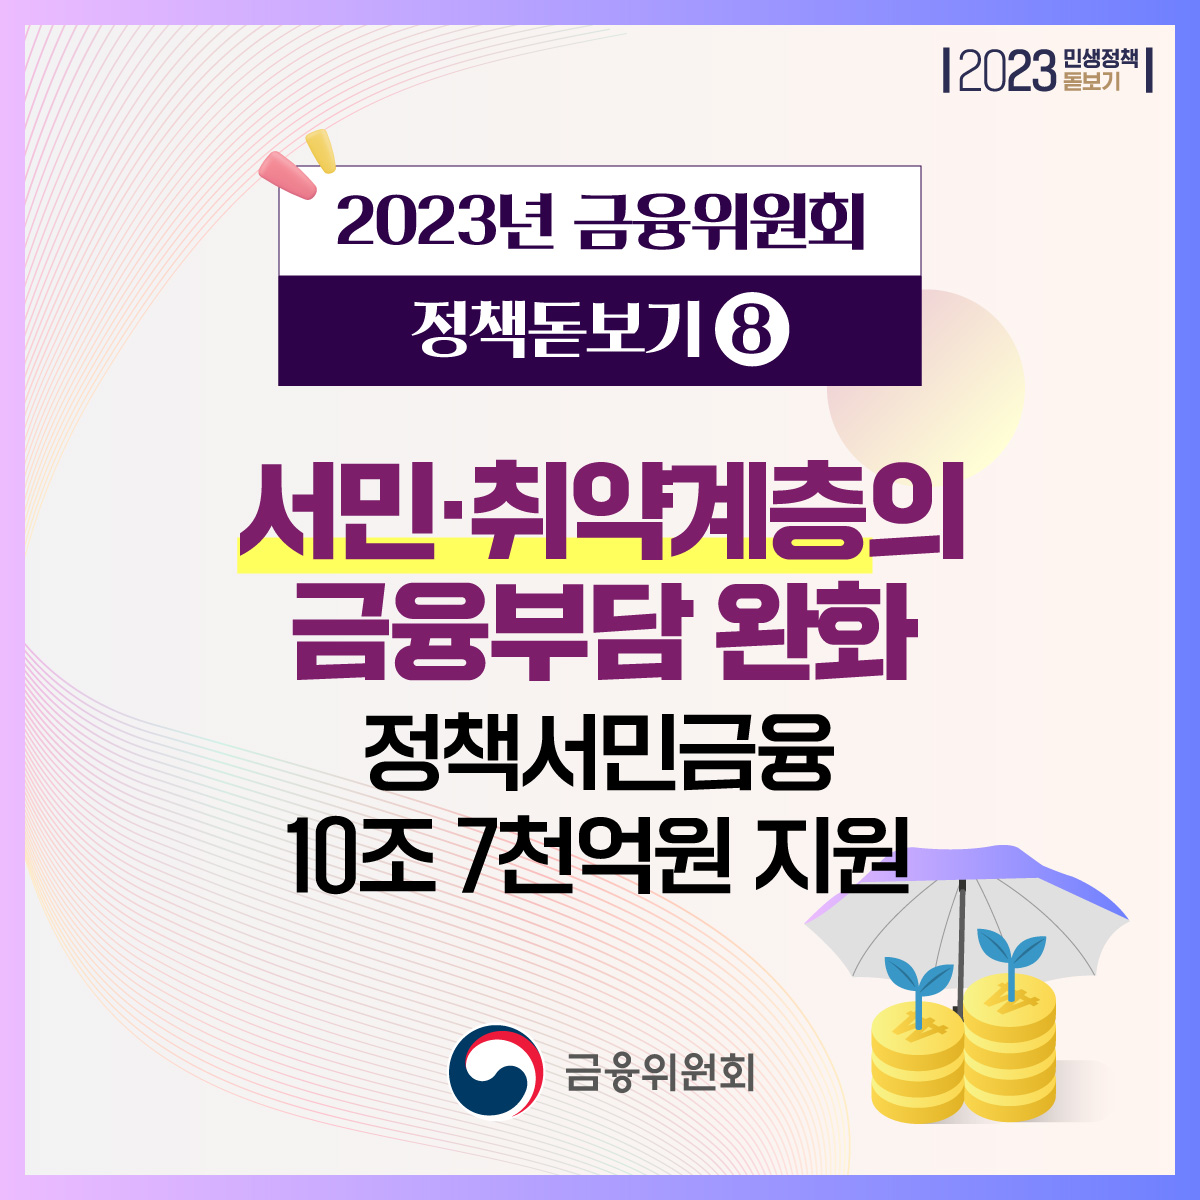 2023년 금융위원회 정책돋보기⑧ 서민·취약계층의 금융부담 완화, 정책서민금융 10조 7천억원 지원